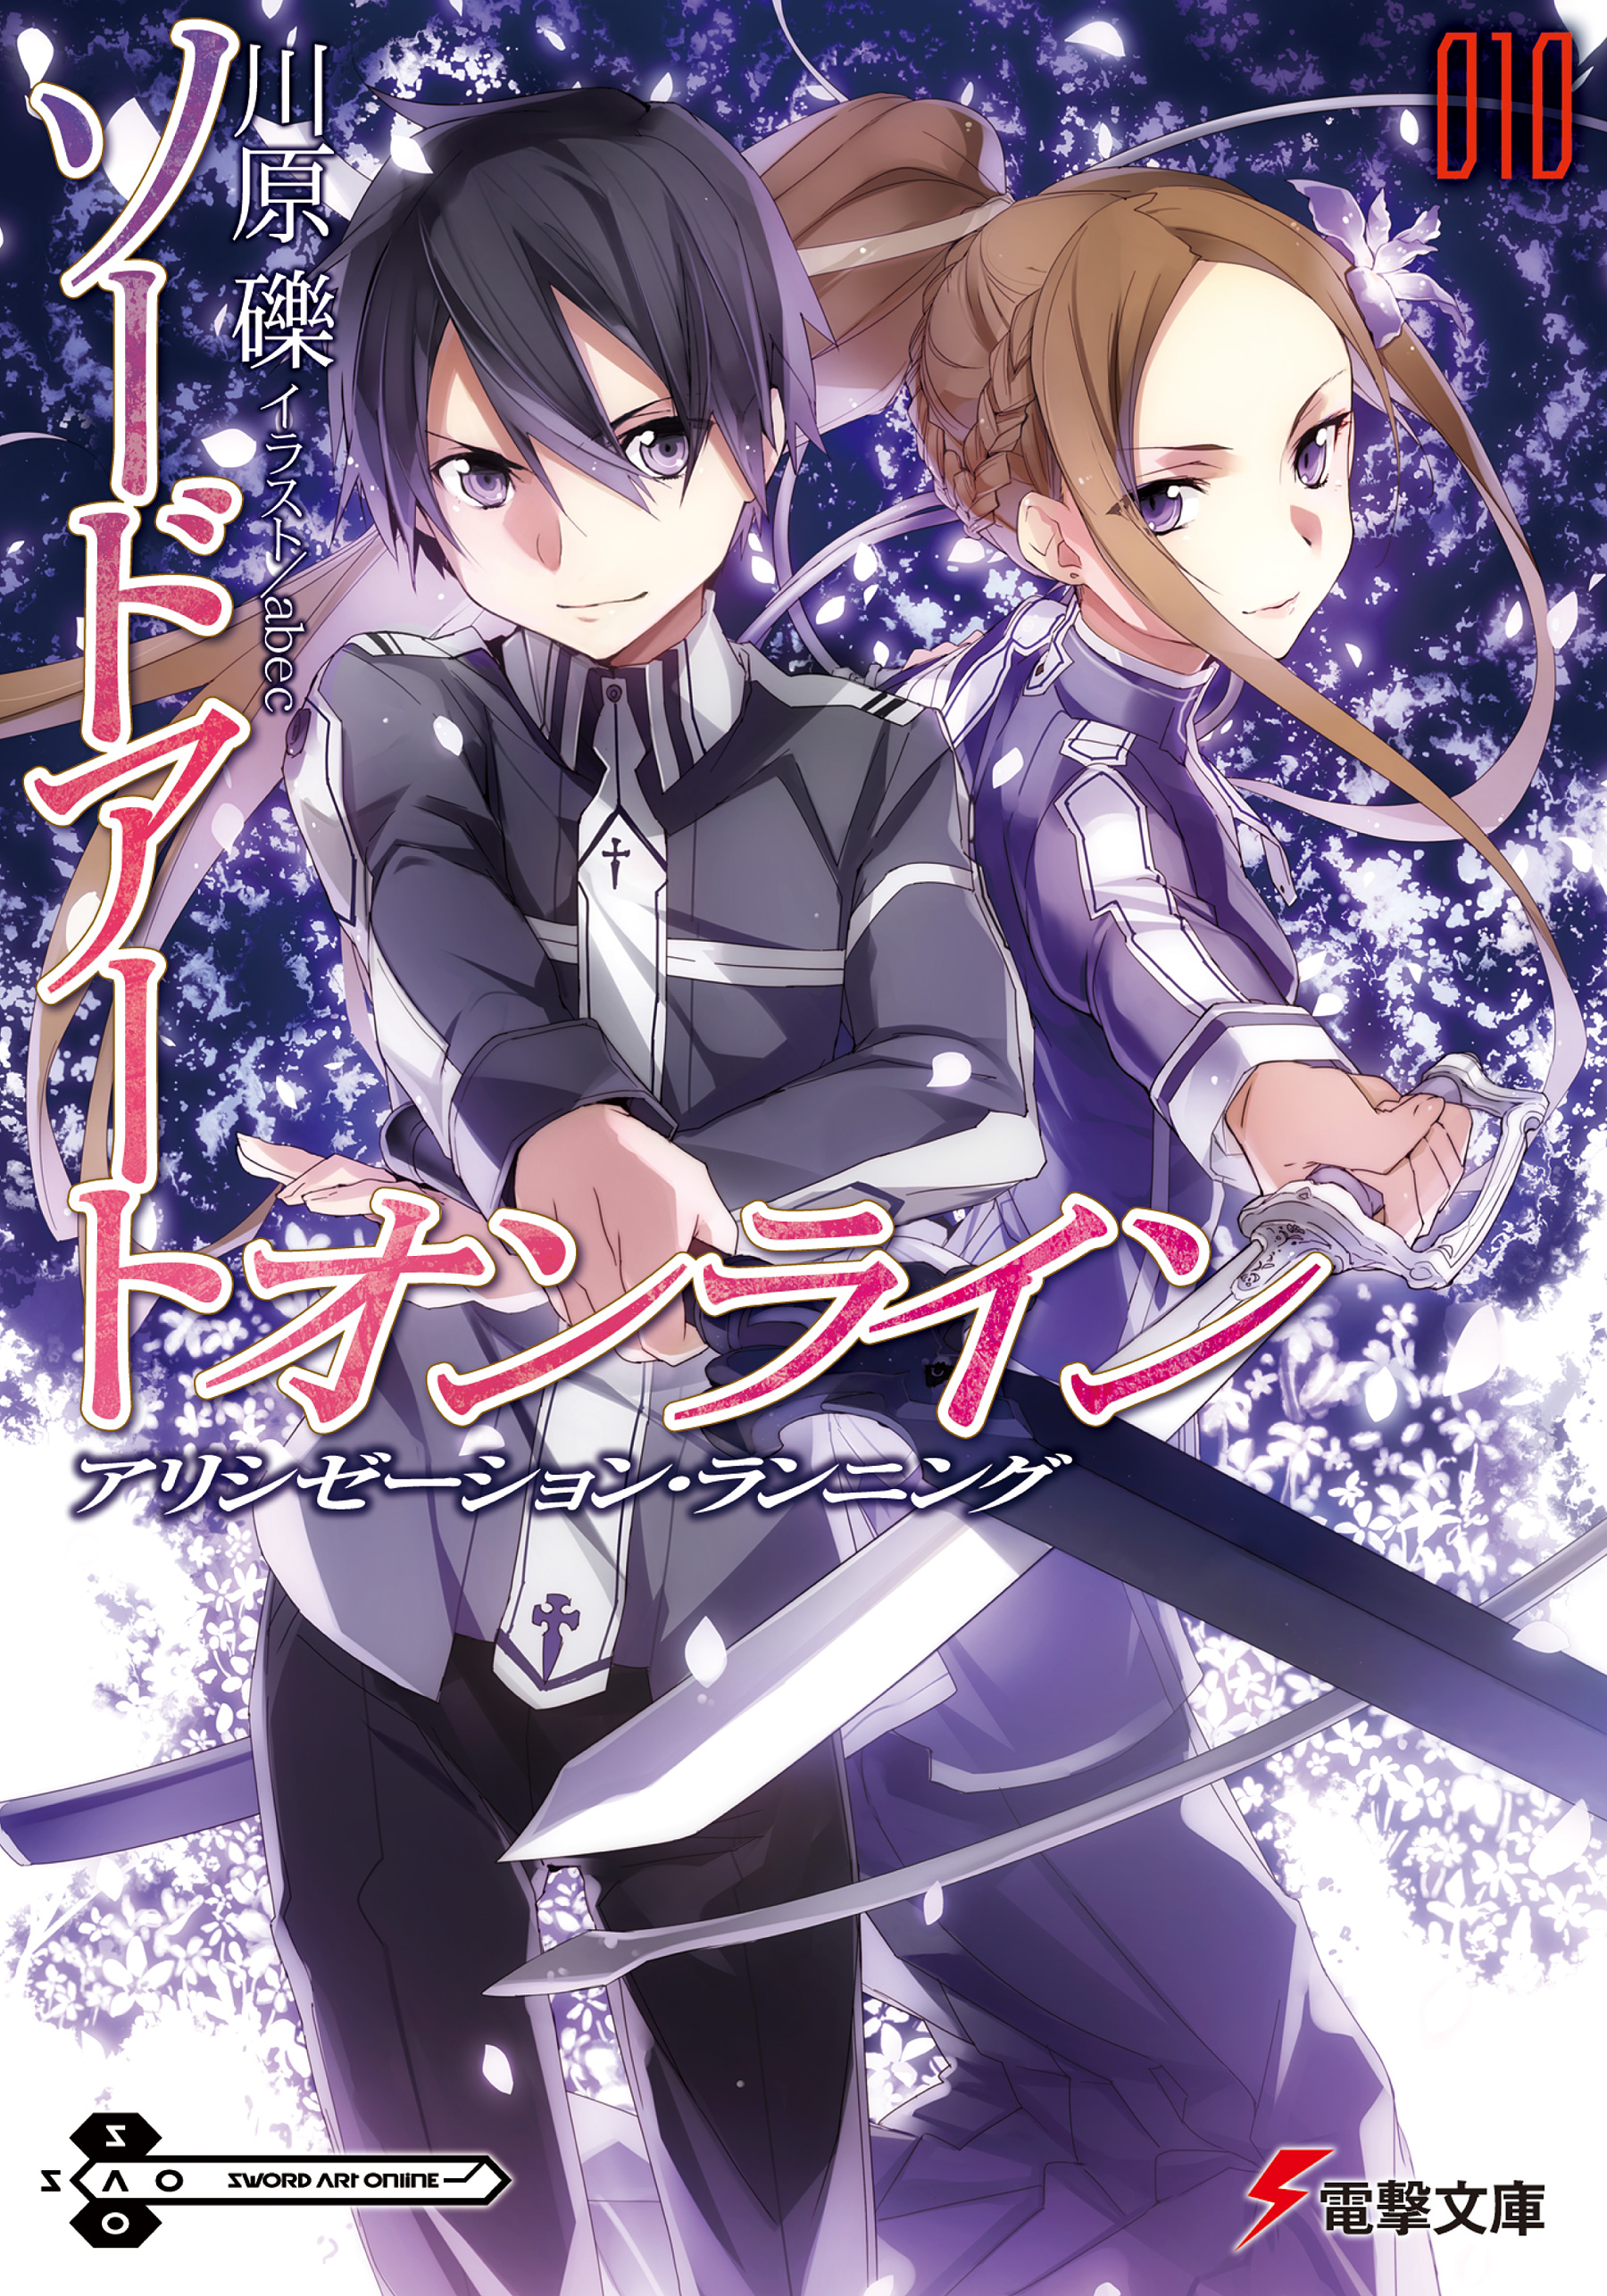 Sword Art Online Light Novel Volume 10 | Sword Art Online Wiki 